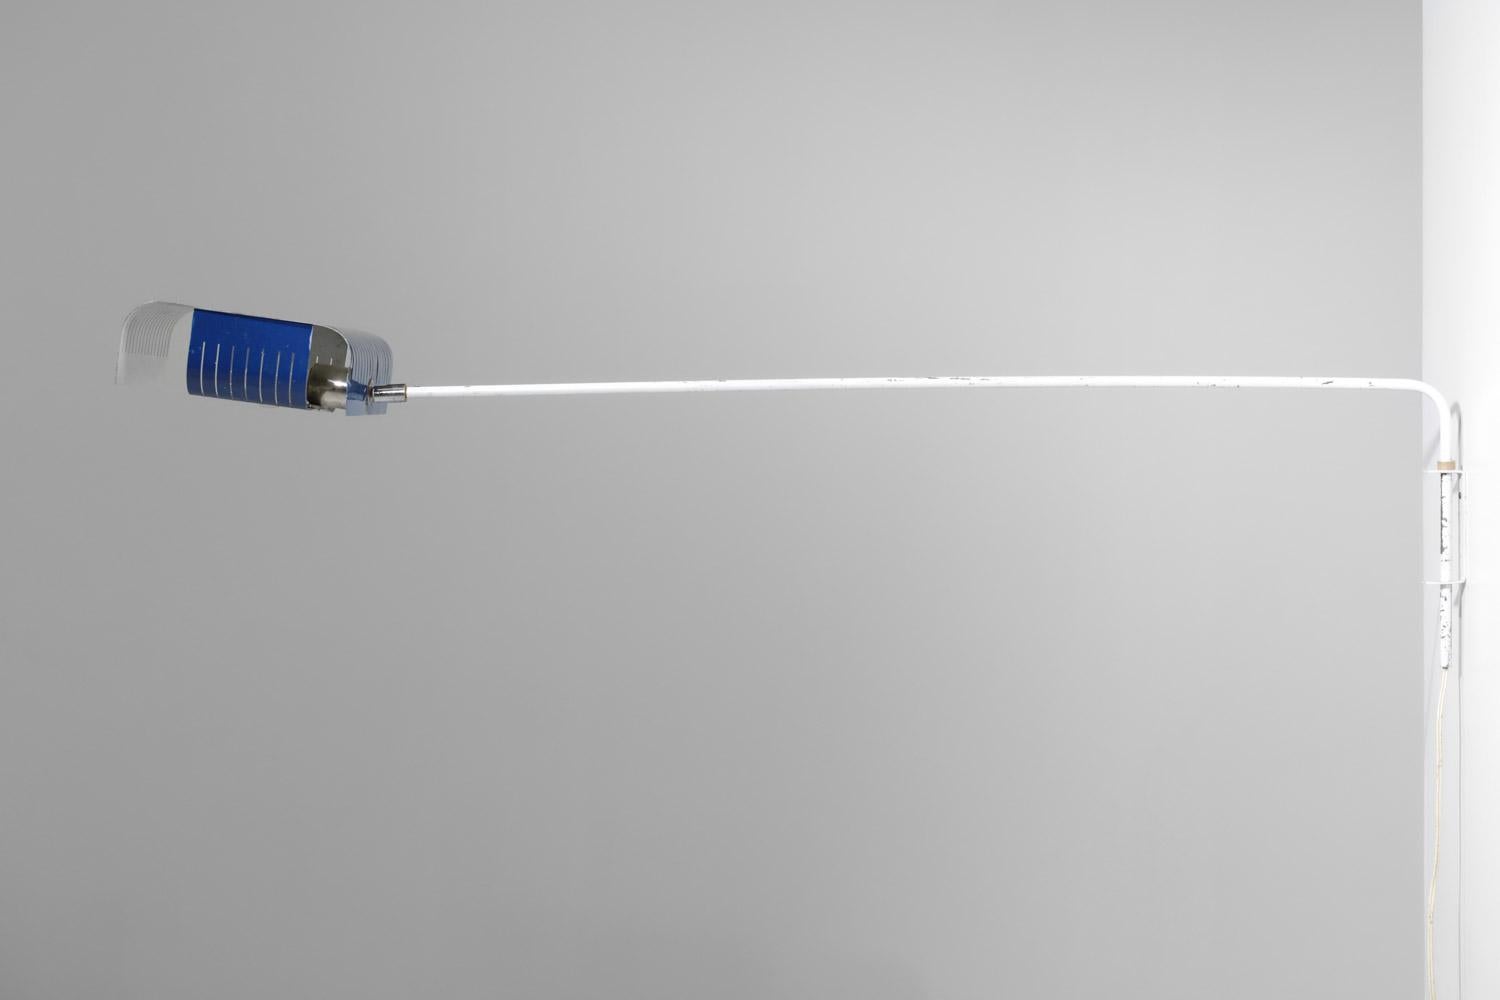 Lange französische Wandlampe aus den 60er / 70er Jahren. Struktur aus weiß lackiertem Metall, Lampenschirm aus perforiertem und gefaltetem Metall, blau und weiß lackiert (Originalfarbe). Möglichkeit der Ausrichtung des Lampenschirms dank eines